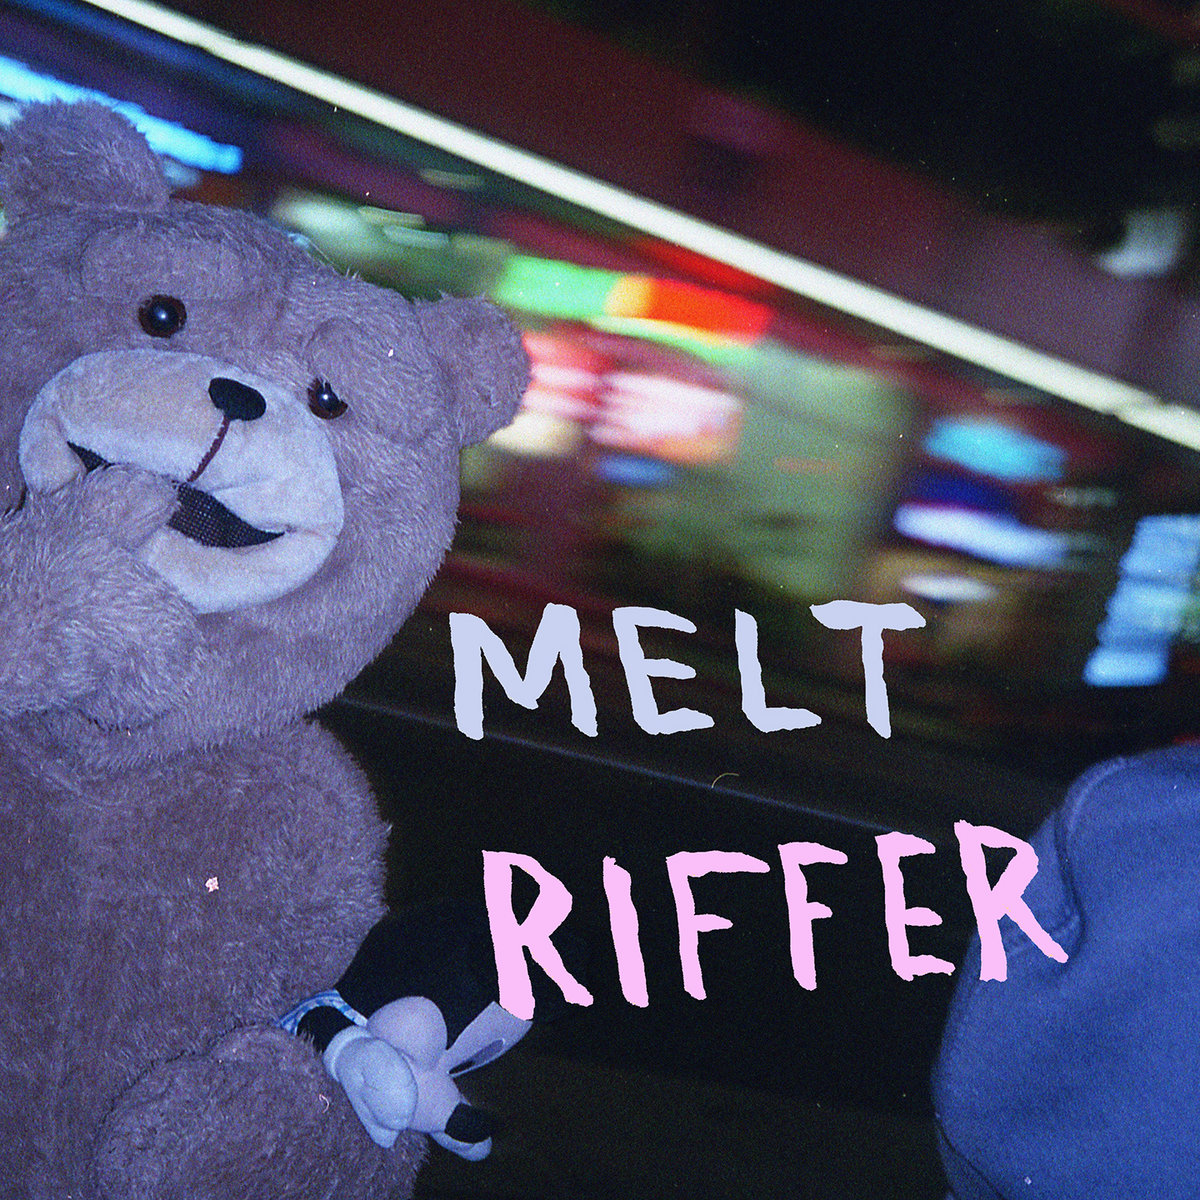 RIFFER / MELT